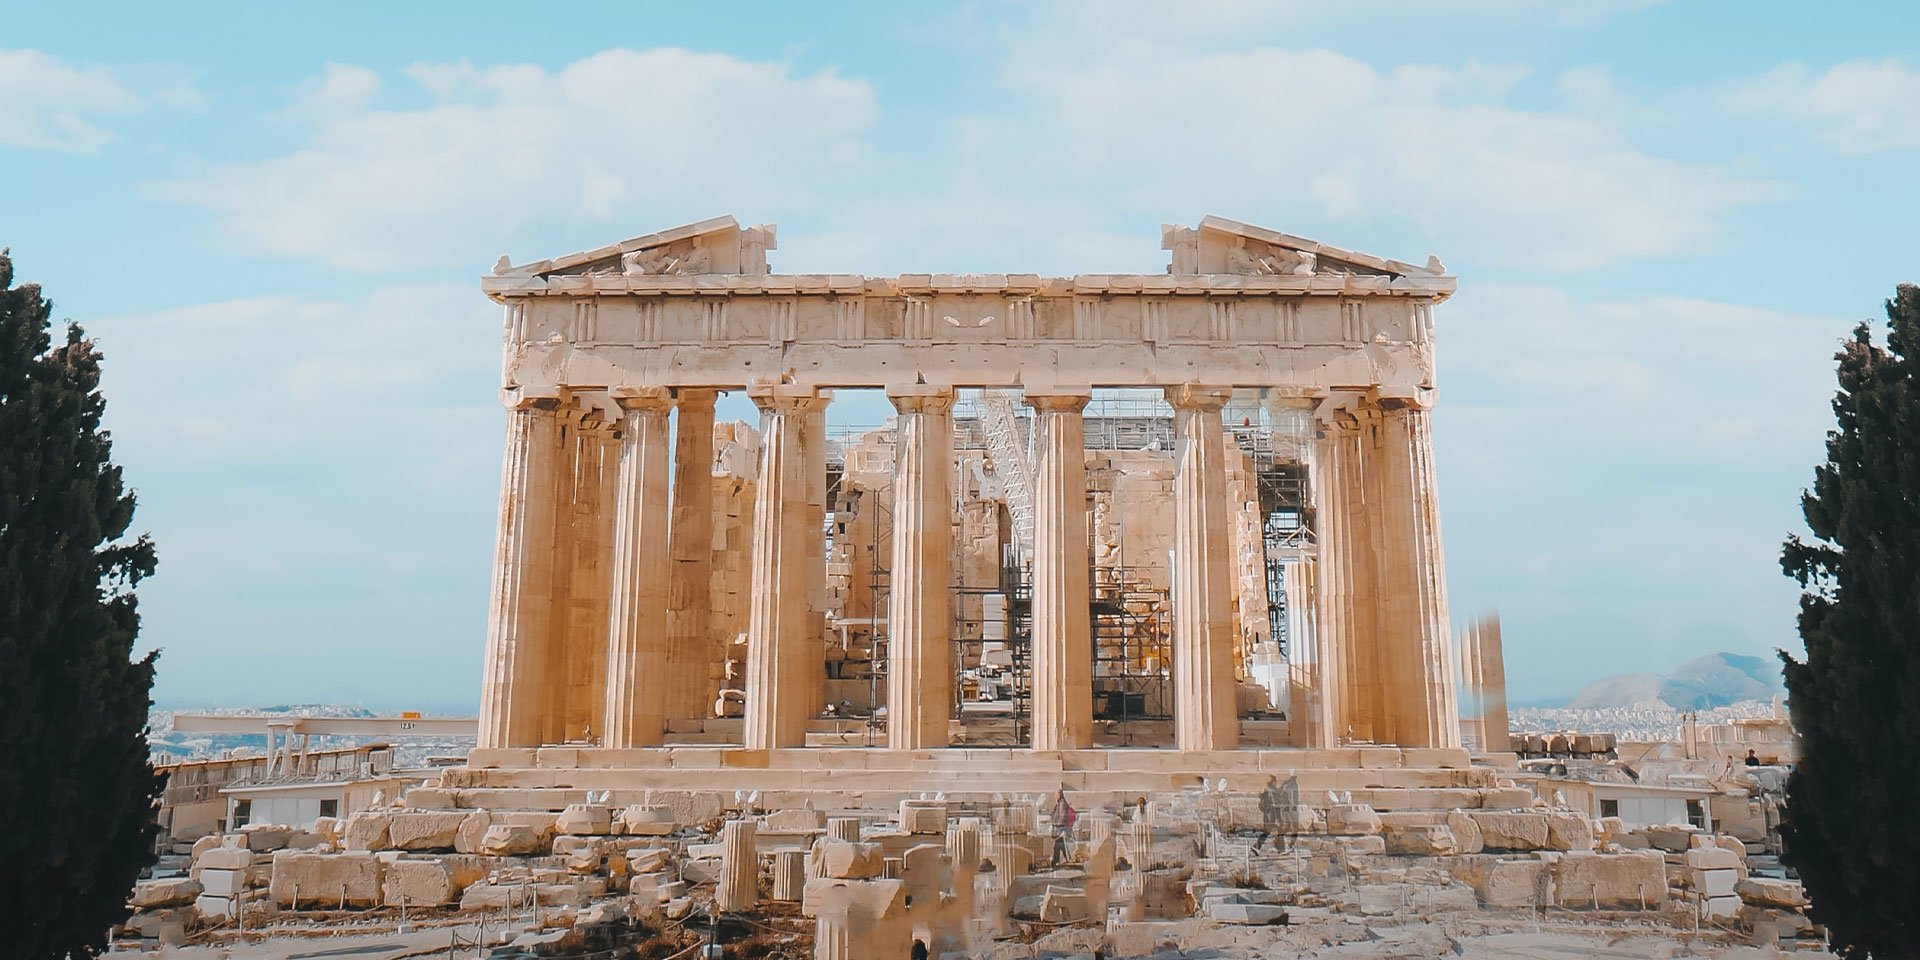 the Parthenon in Athens